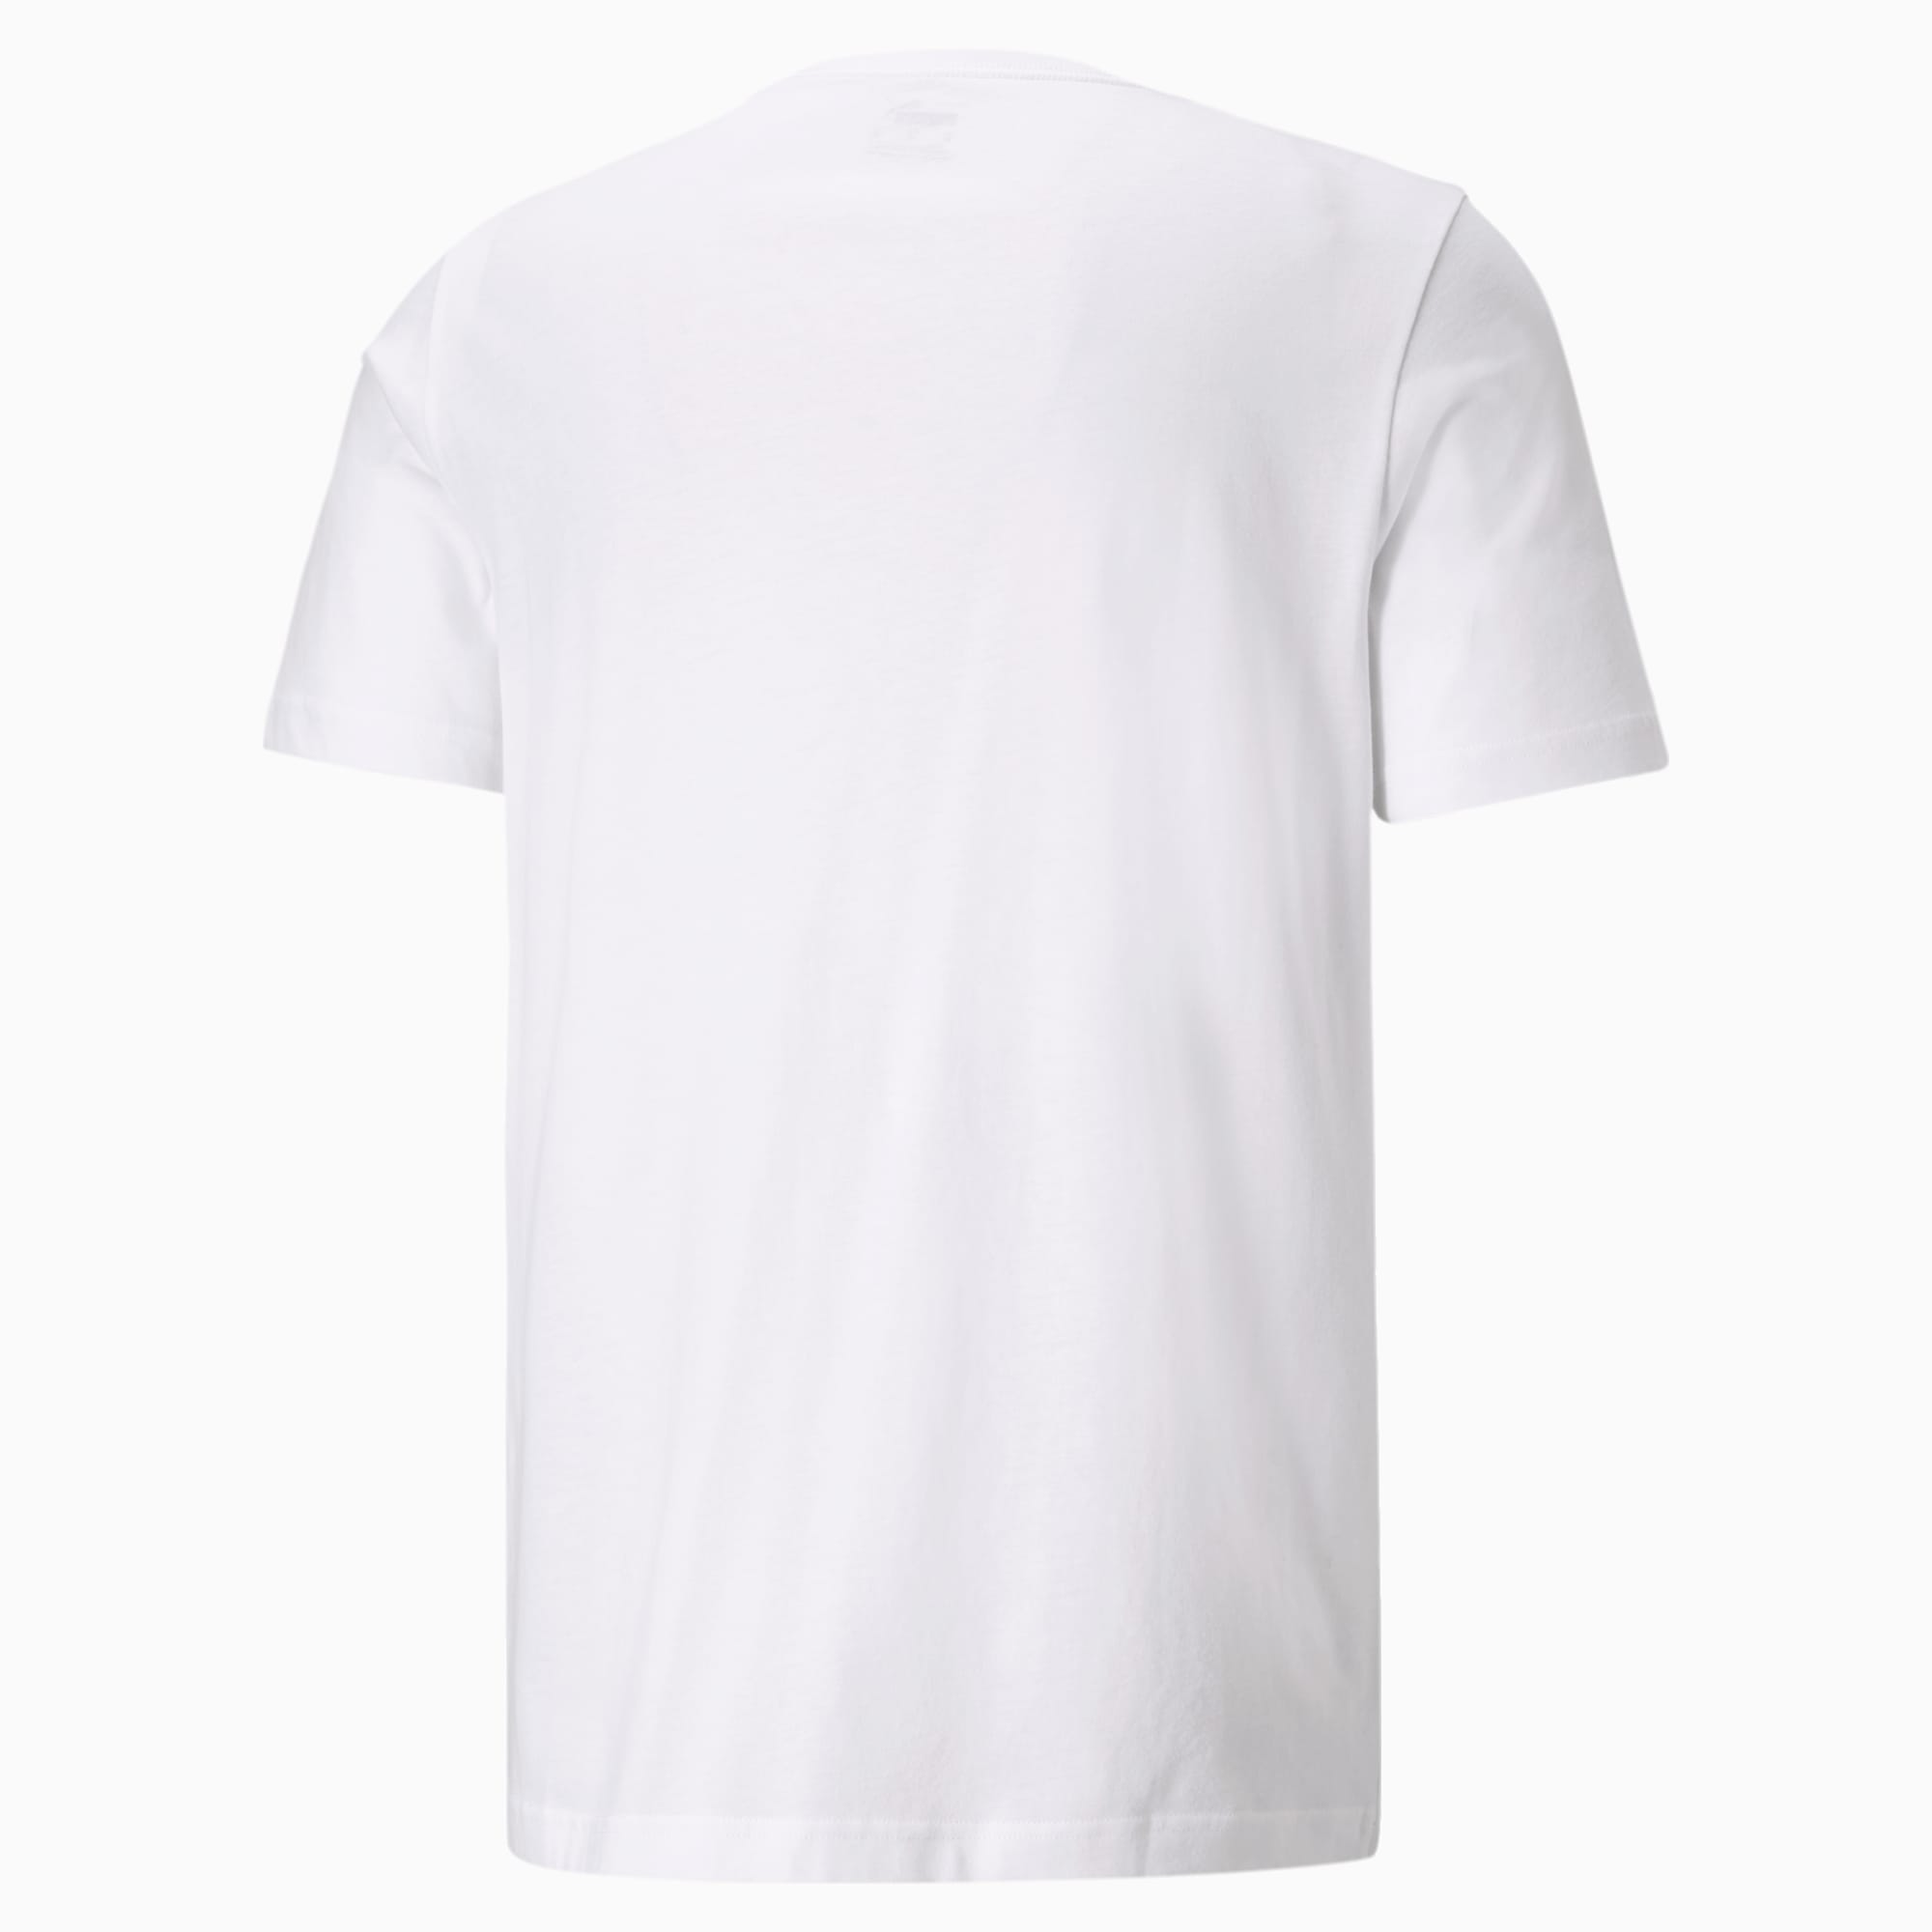 PUMA Essentials Small Logo T-Shirt Men, White